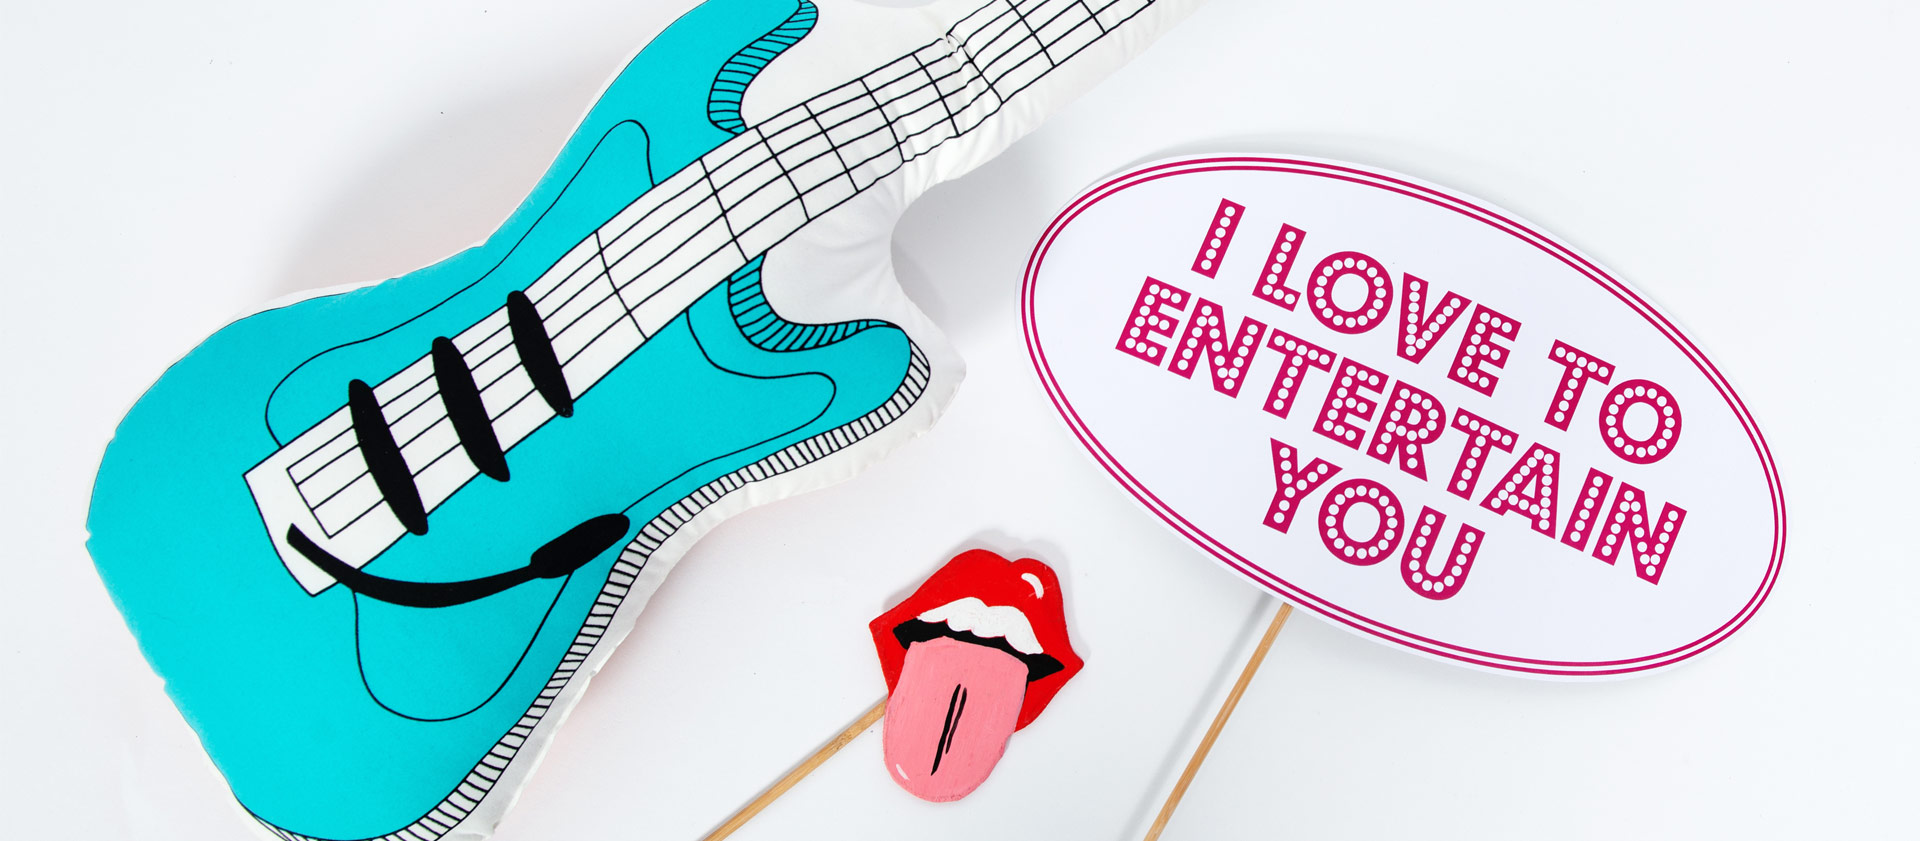 Photobooth-Schild mit der Aufschrift I love to Entertain you, eine Luftgitarre und eine Stones-Zunge an einem Stab 